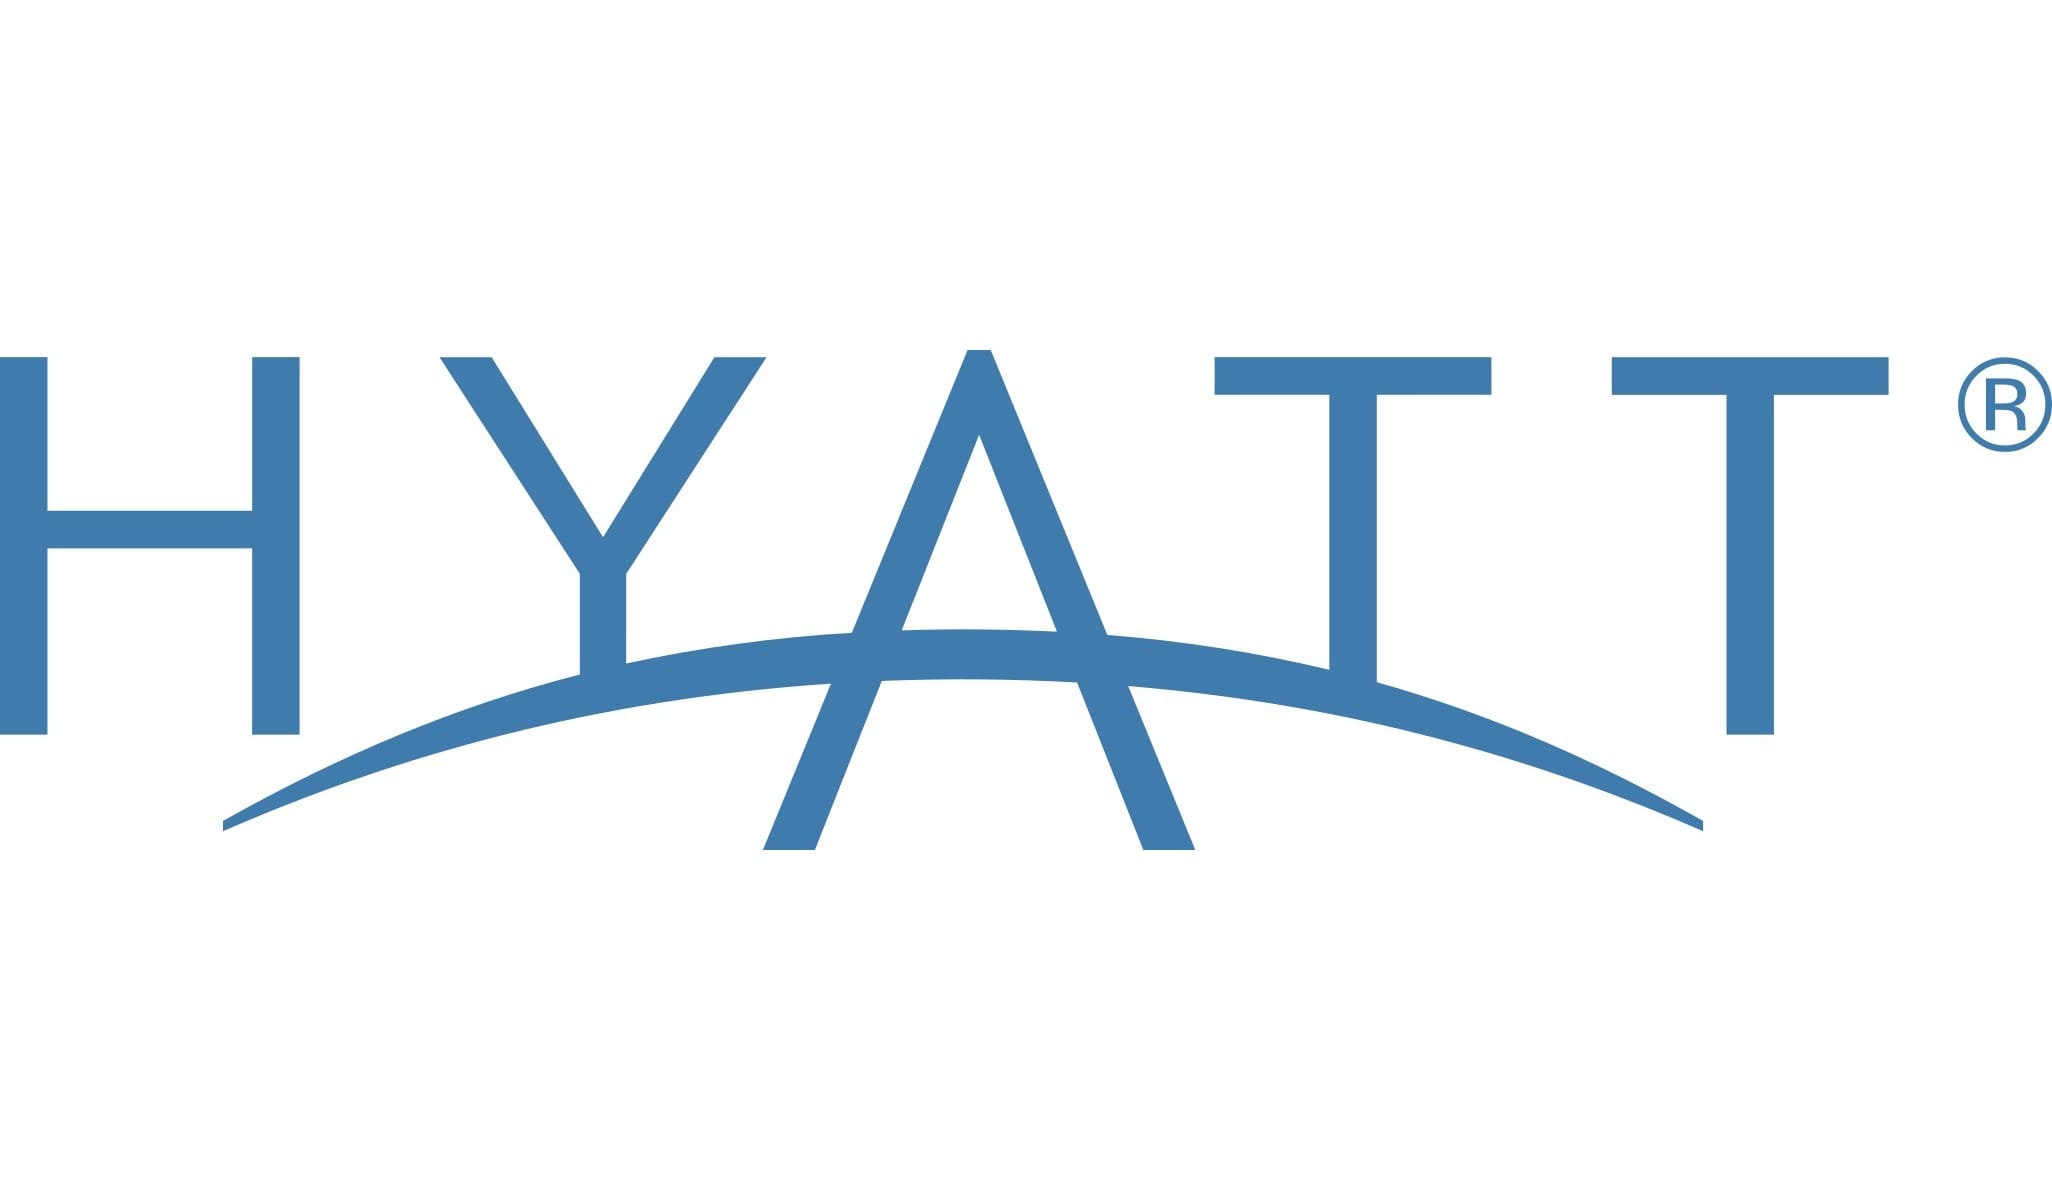 hyatt place hotel logo